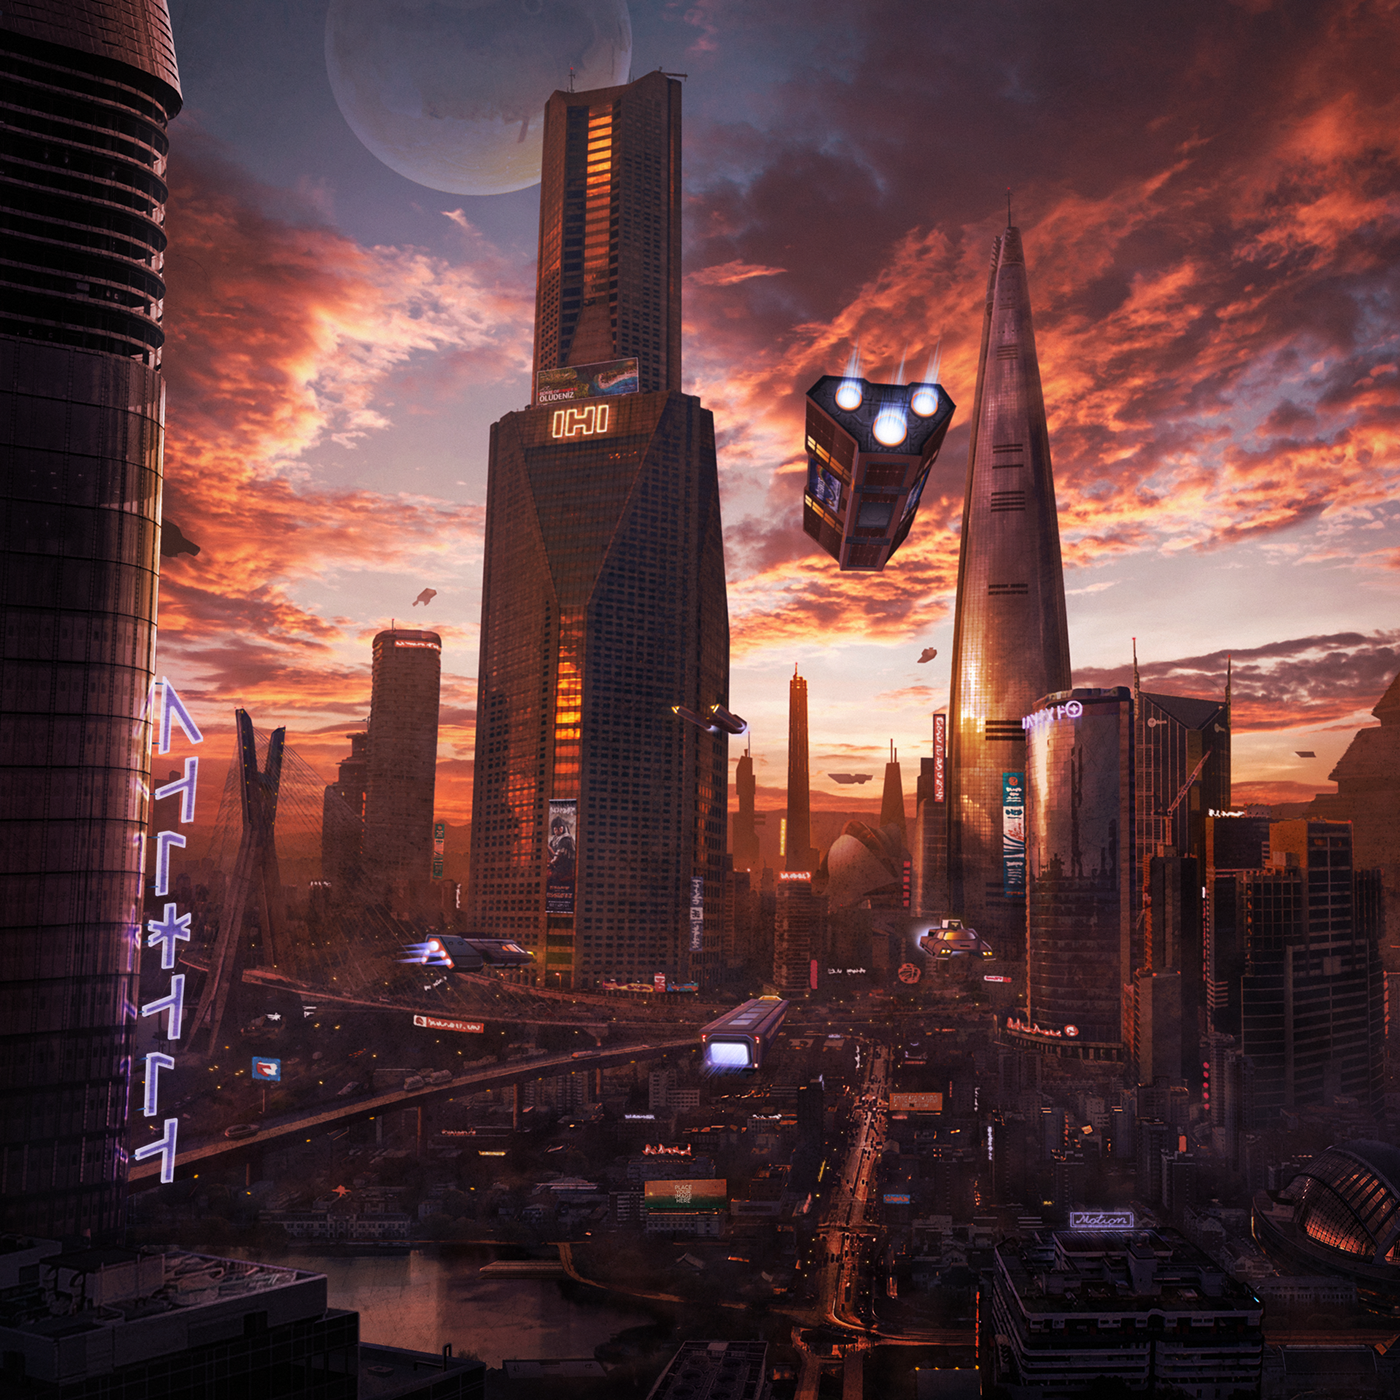 sci-fi planet future city environment concept skyscraper sunset